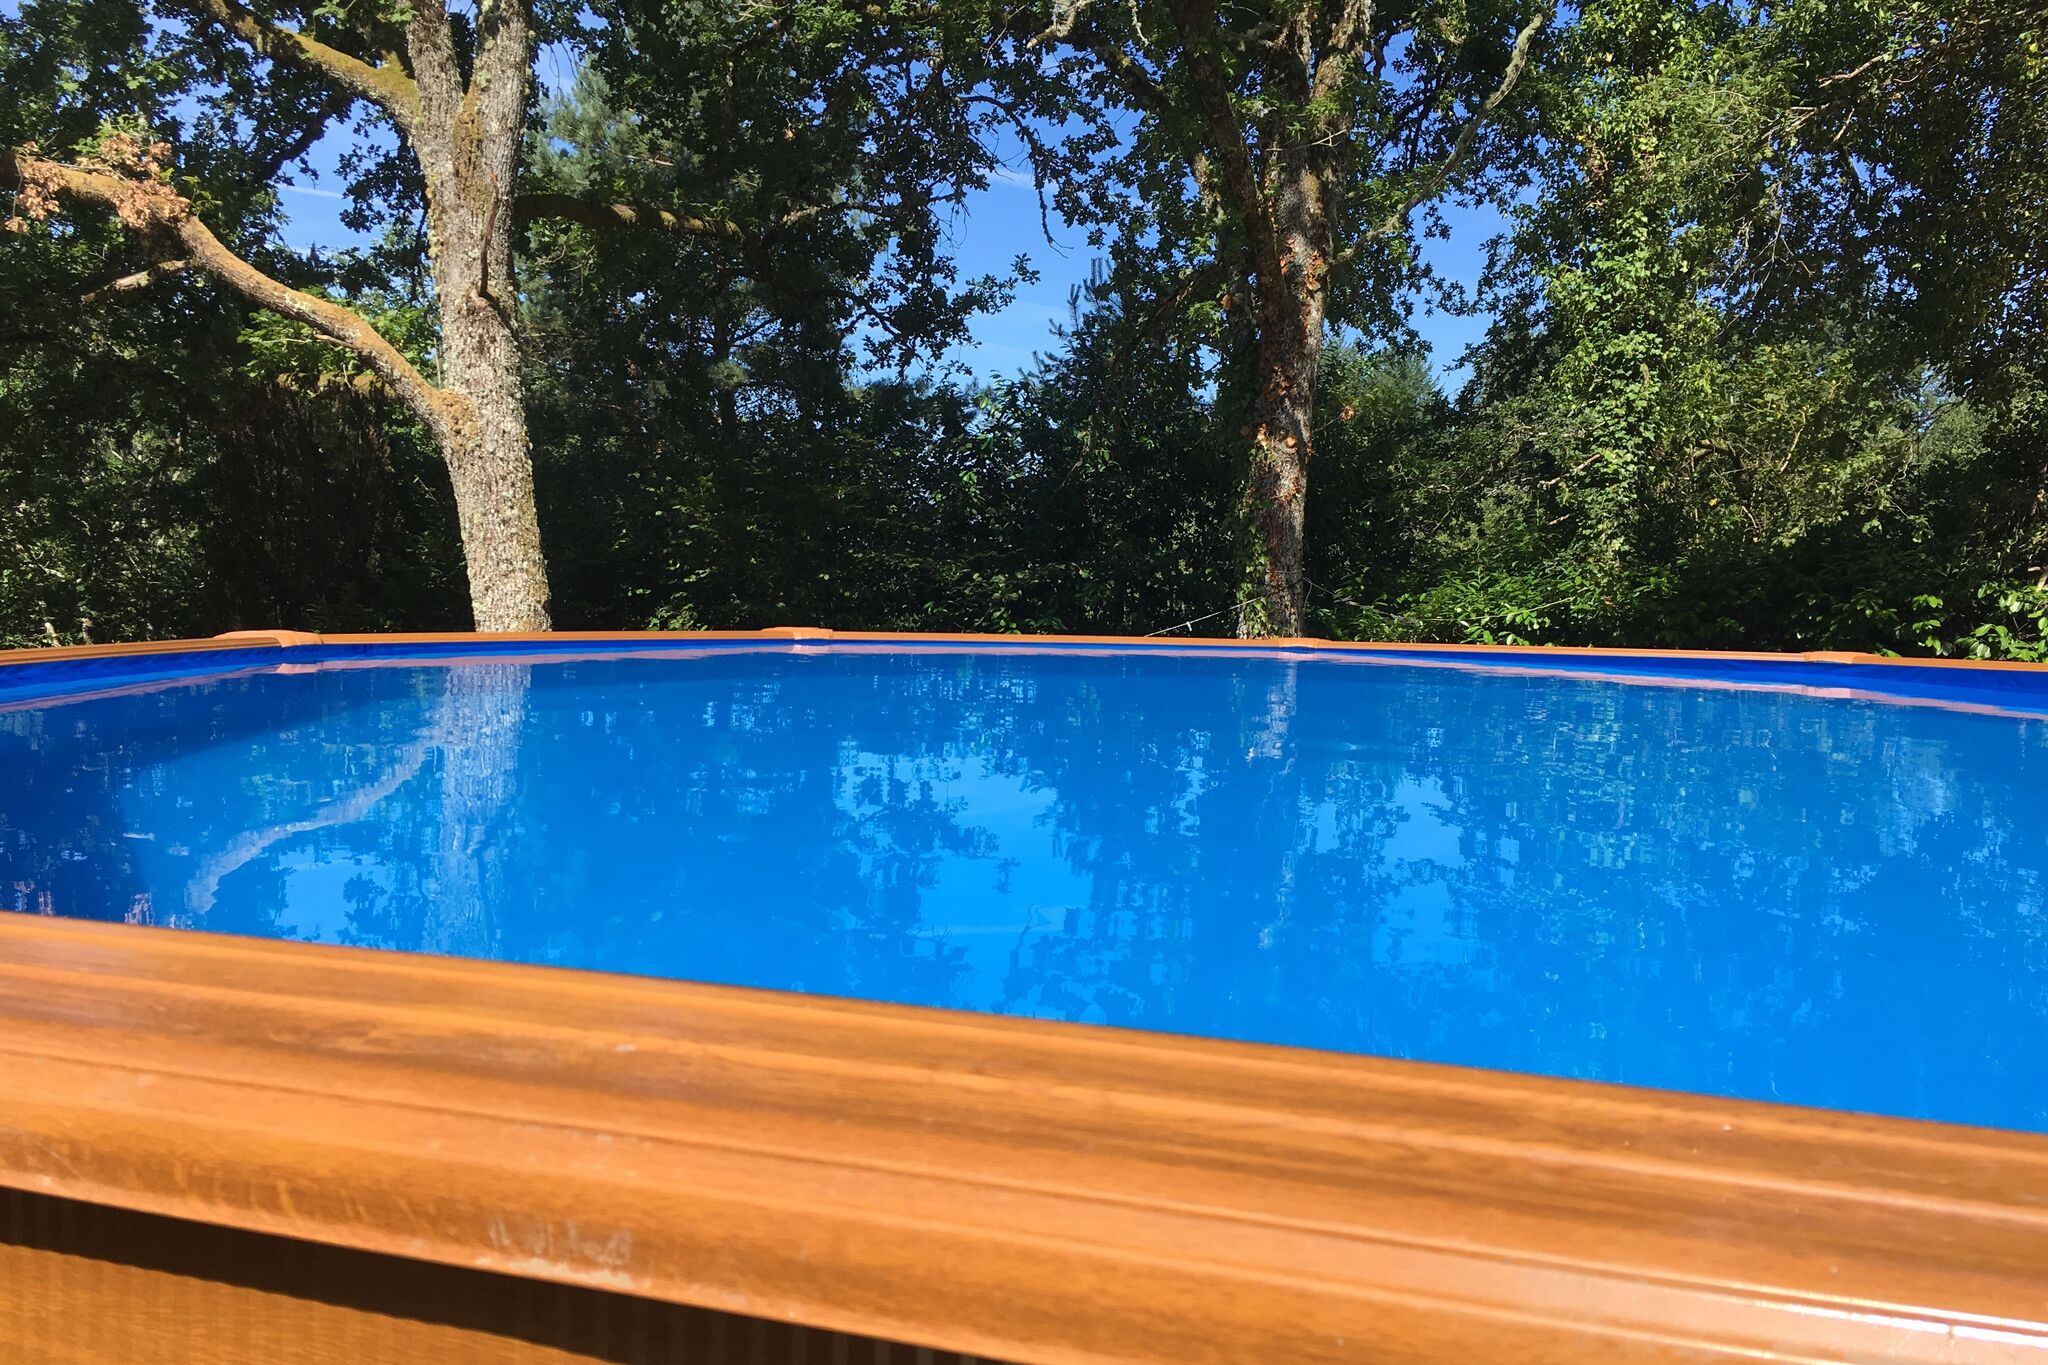 Maison de vacances tranquille avec piscine, 30min de Salers